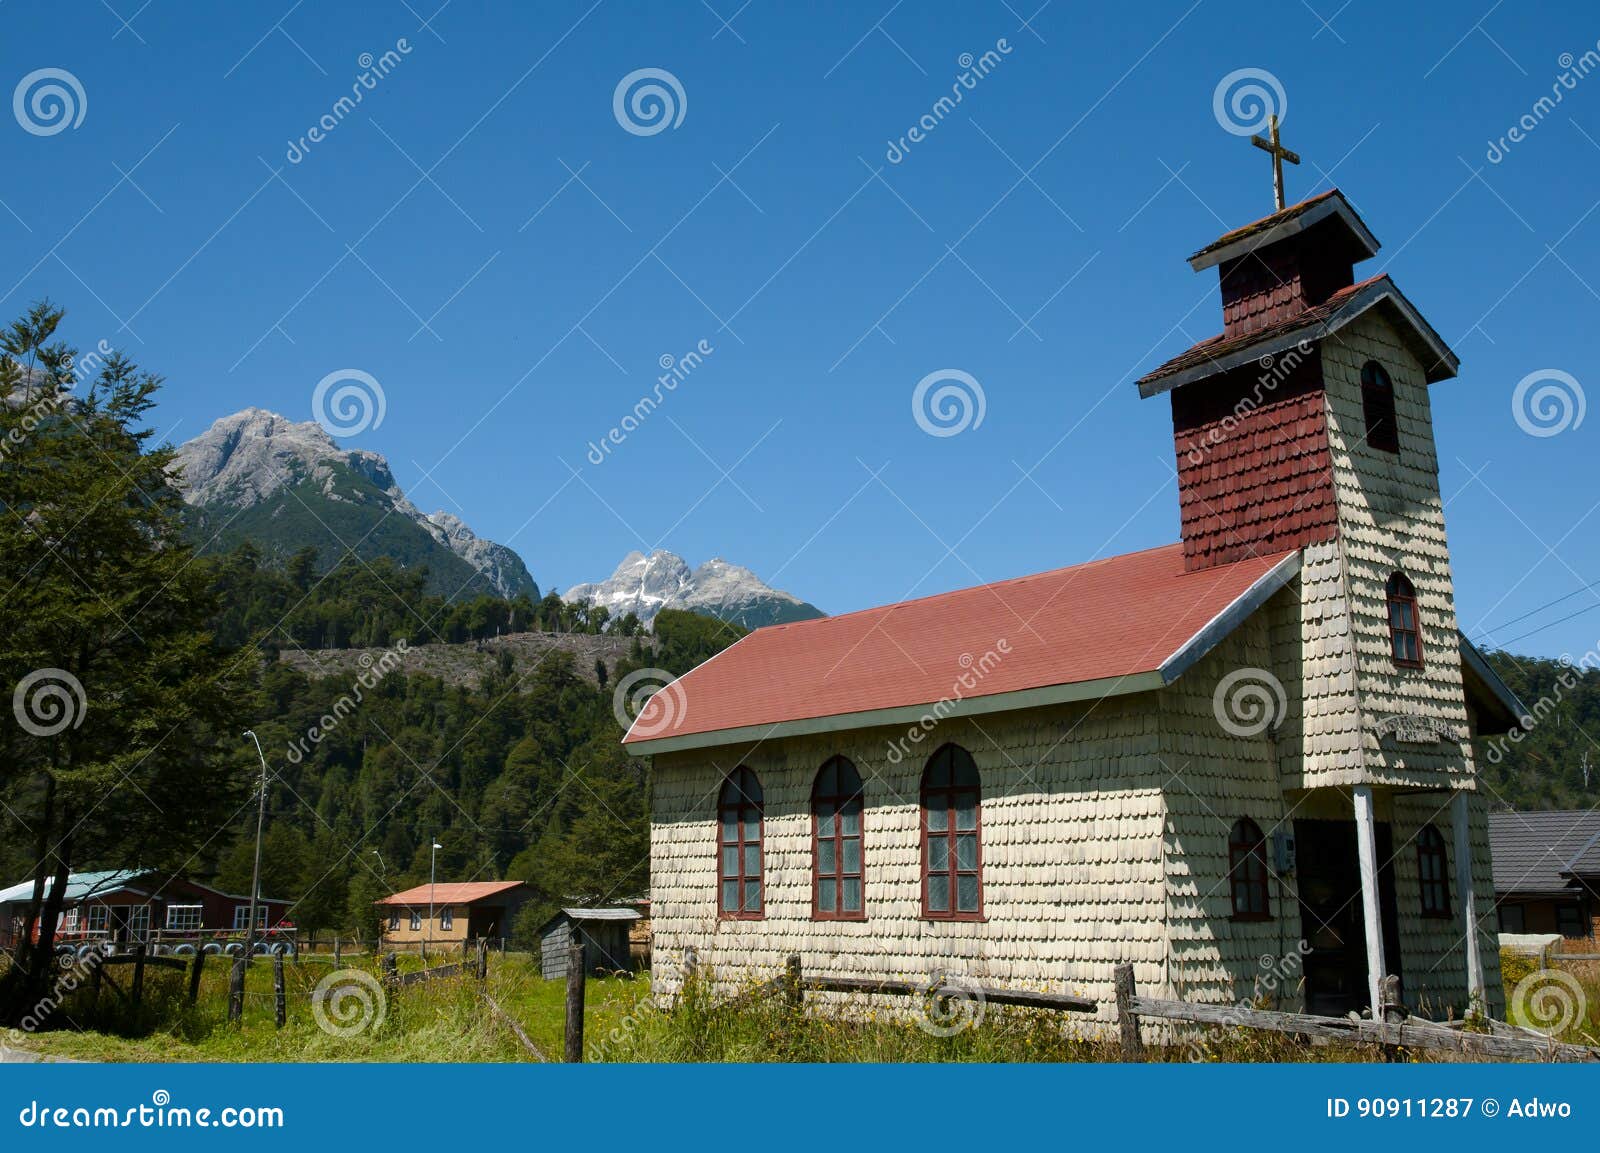 san jose obrero church - santa lucia - chile